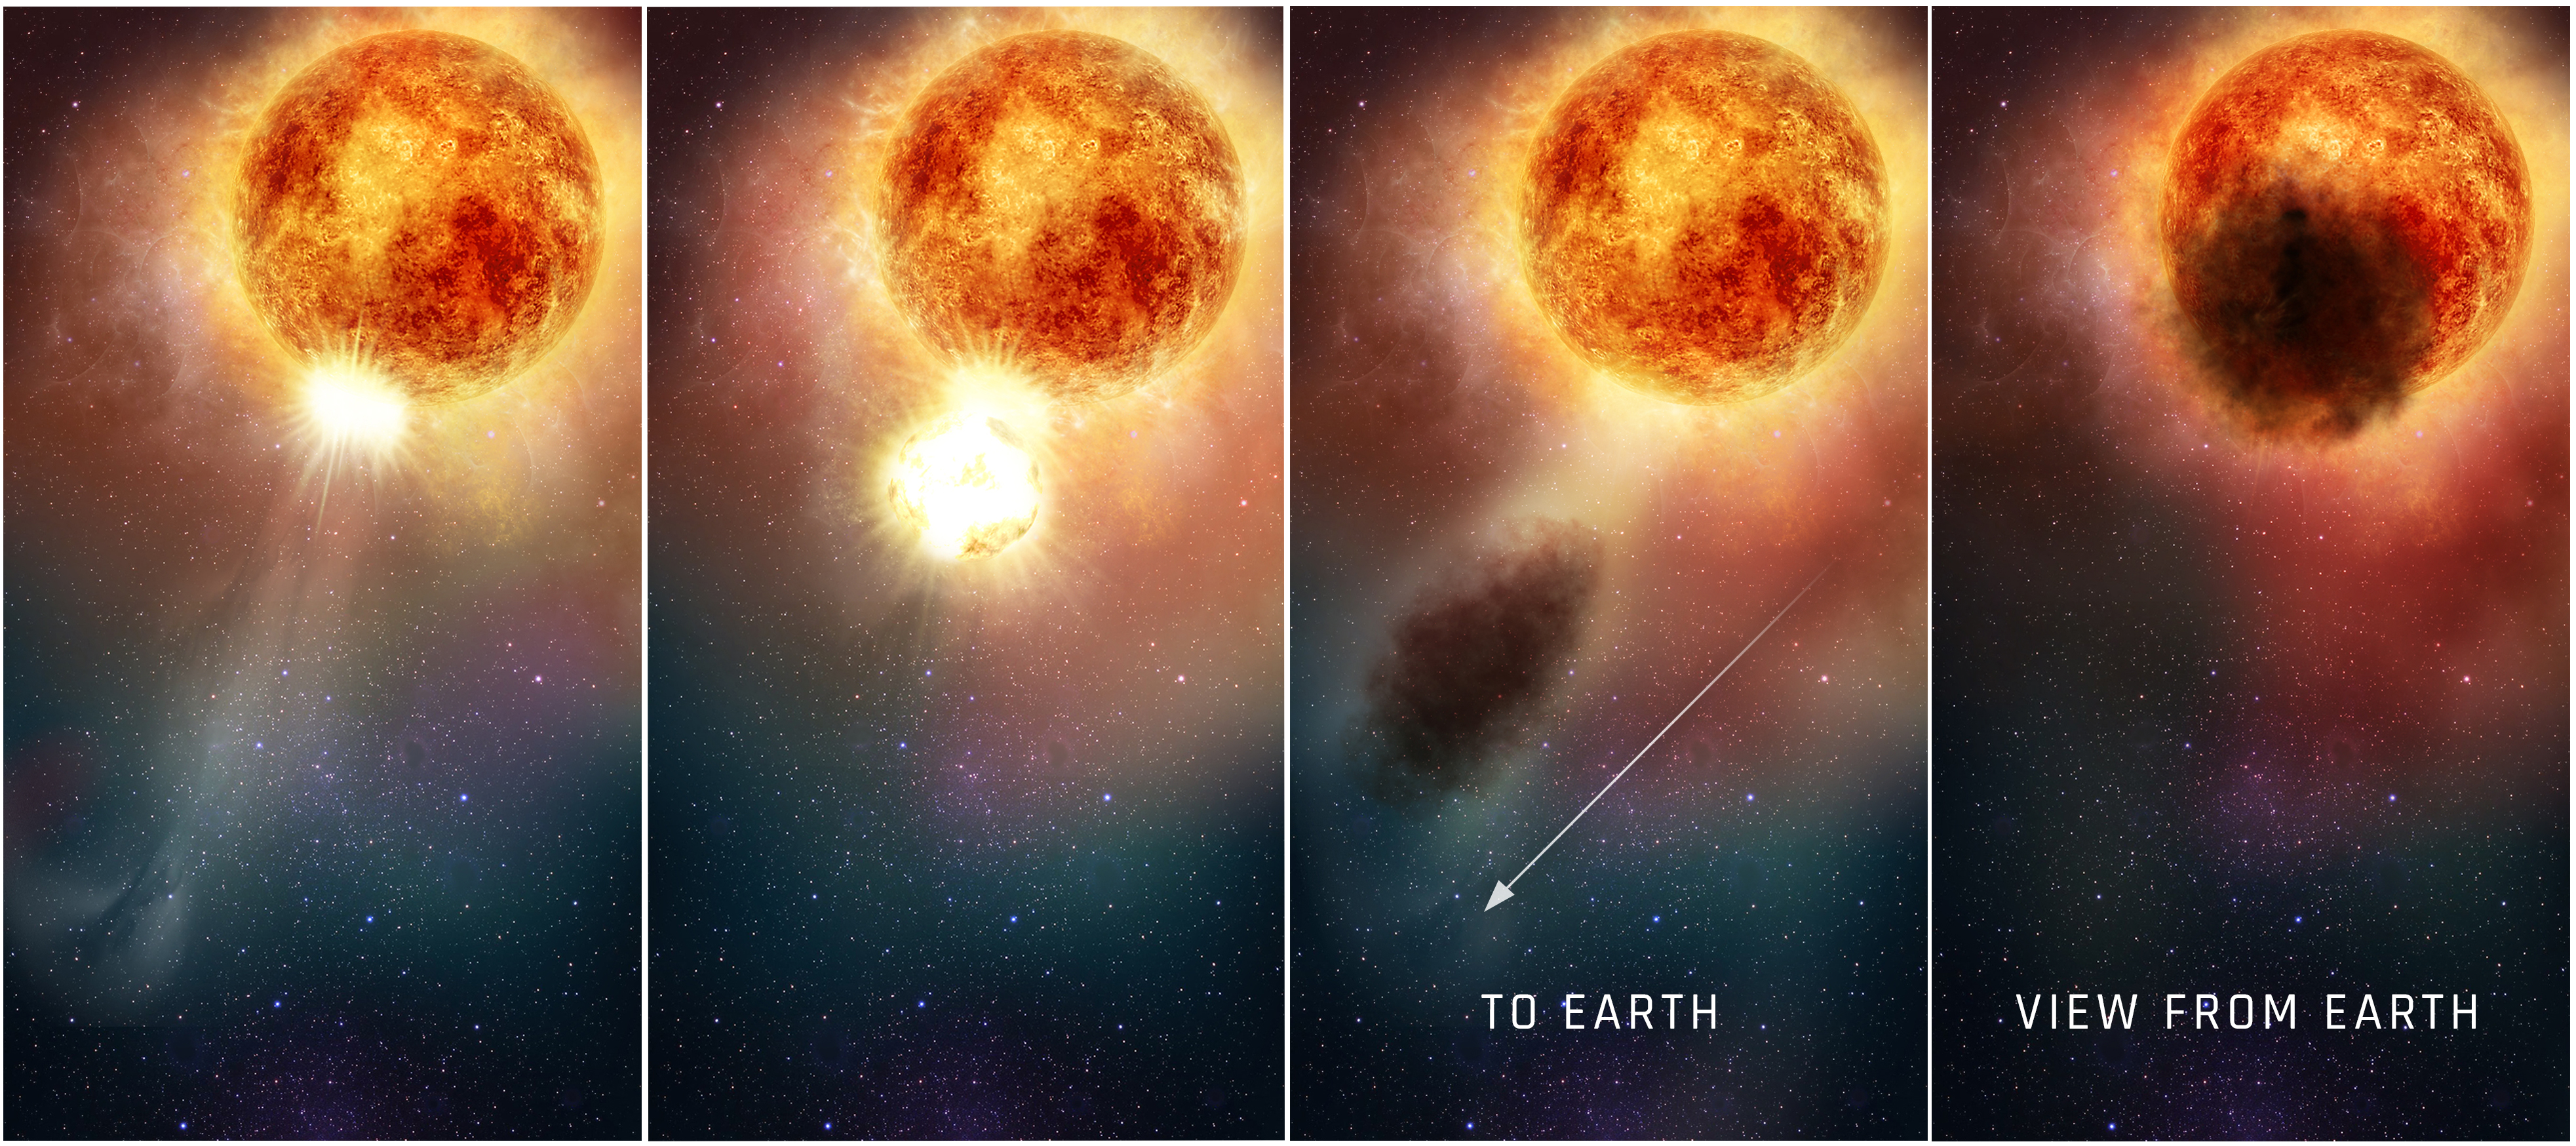 Grafika ilustrująca w jaki sposób południowy obszar nadolbrzyma Betelgeza nagle mógł zmniejszyć jasność przed kilka miesięcy przy końcu 2019 r. i na początku 2020 r. Dwa panele od lewej prezentują widok obłoku gorącej plazmy (ultrafiolet - teleskop HST), który został  wyrzucony z ogromnej komórki konwekcyjnej na powierzchni gwiazdy. Na trzecim panelu widać, że chmura plazmy stopniowo oddalając się od gwiazdy - schłodziła się i uformowała obłok pyłu. I wreszcie panel od prawej ukazuje ten ogromny obłok pyłowy widziany z Ziemi, który przysłonił aż 1/4 tarczy tego nadolbrzyma. Źródło: NASA, ESA, and E. Wheatley (STScI).